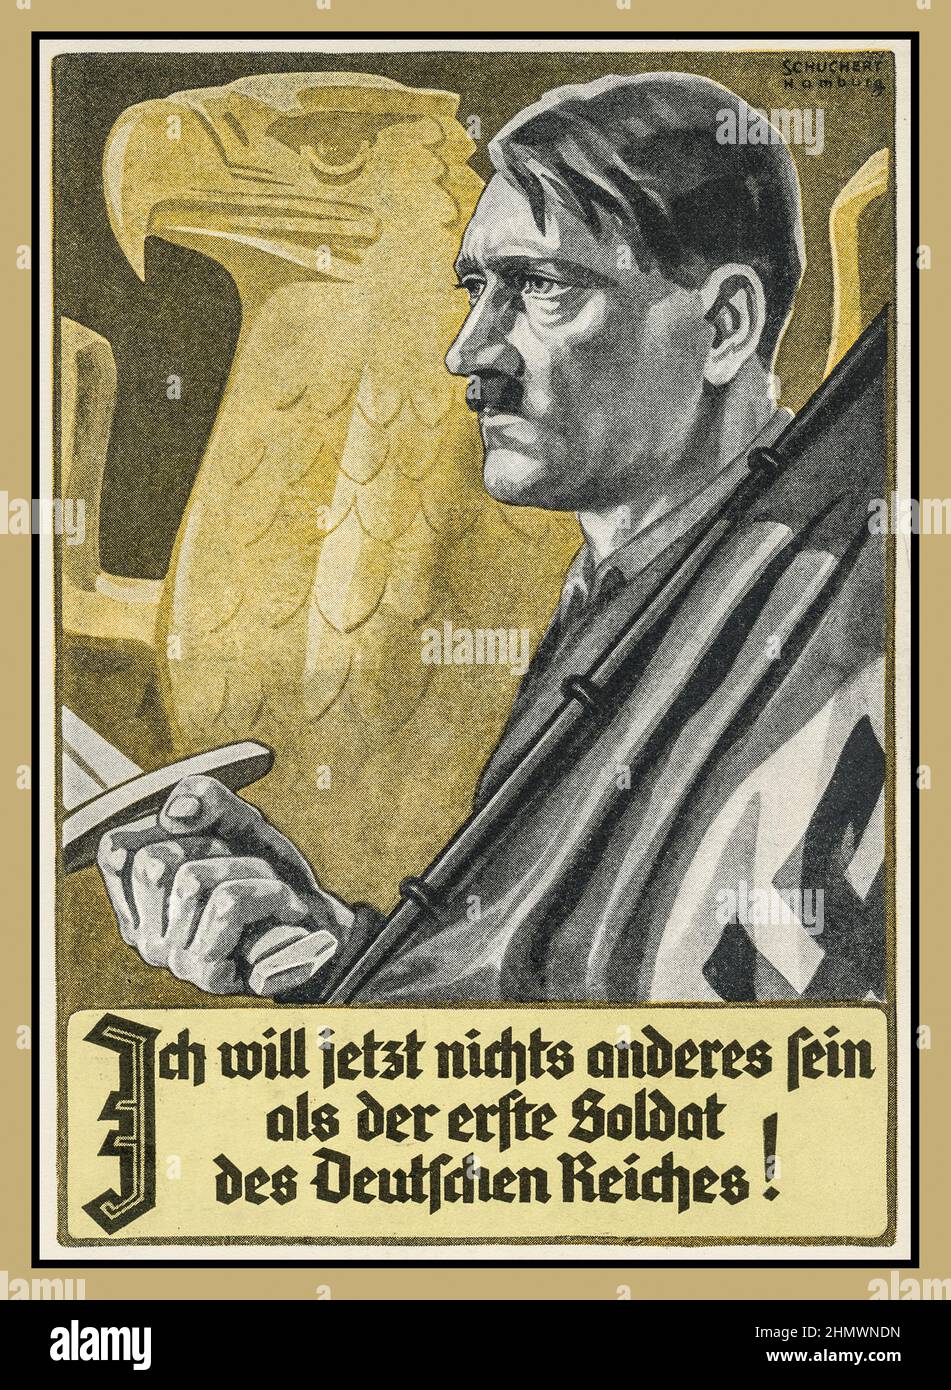 1930s Nazi-Propaganda-Plakatkarte mit Adolf Hitler mit Schwert und Hakenkreuzflagge mit deutschem Adler hinter dem Rücken 'ich will jetzt nichts anderes fein als der erfte soldat des deutschen reichs' 'Ich will jetzt nichts anderes sein als der erste Soldat des deutschen Reichs' Stockfoto